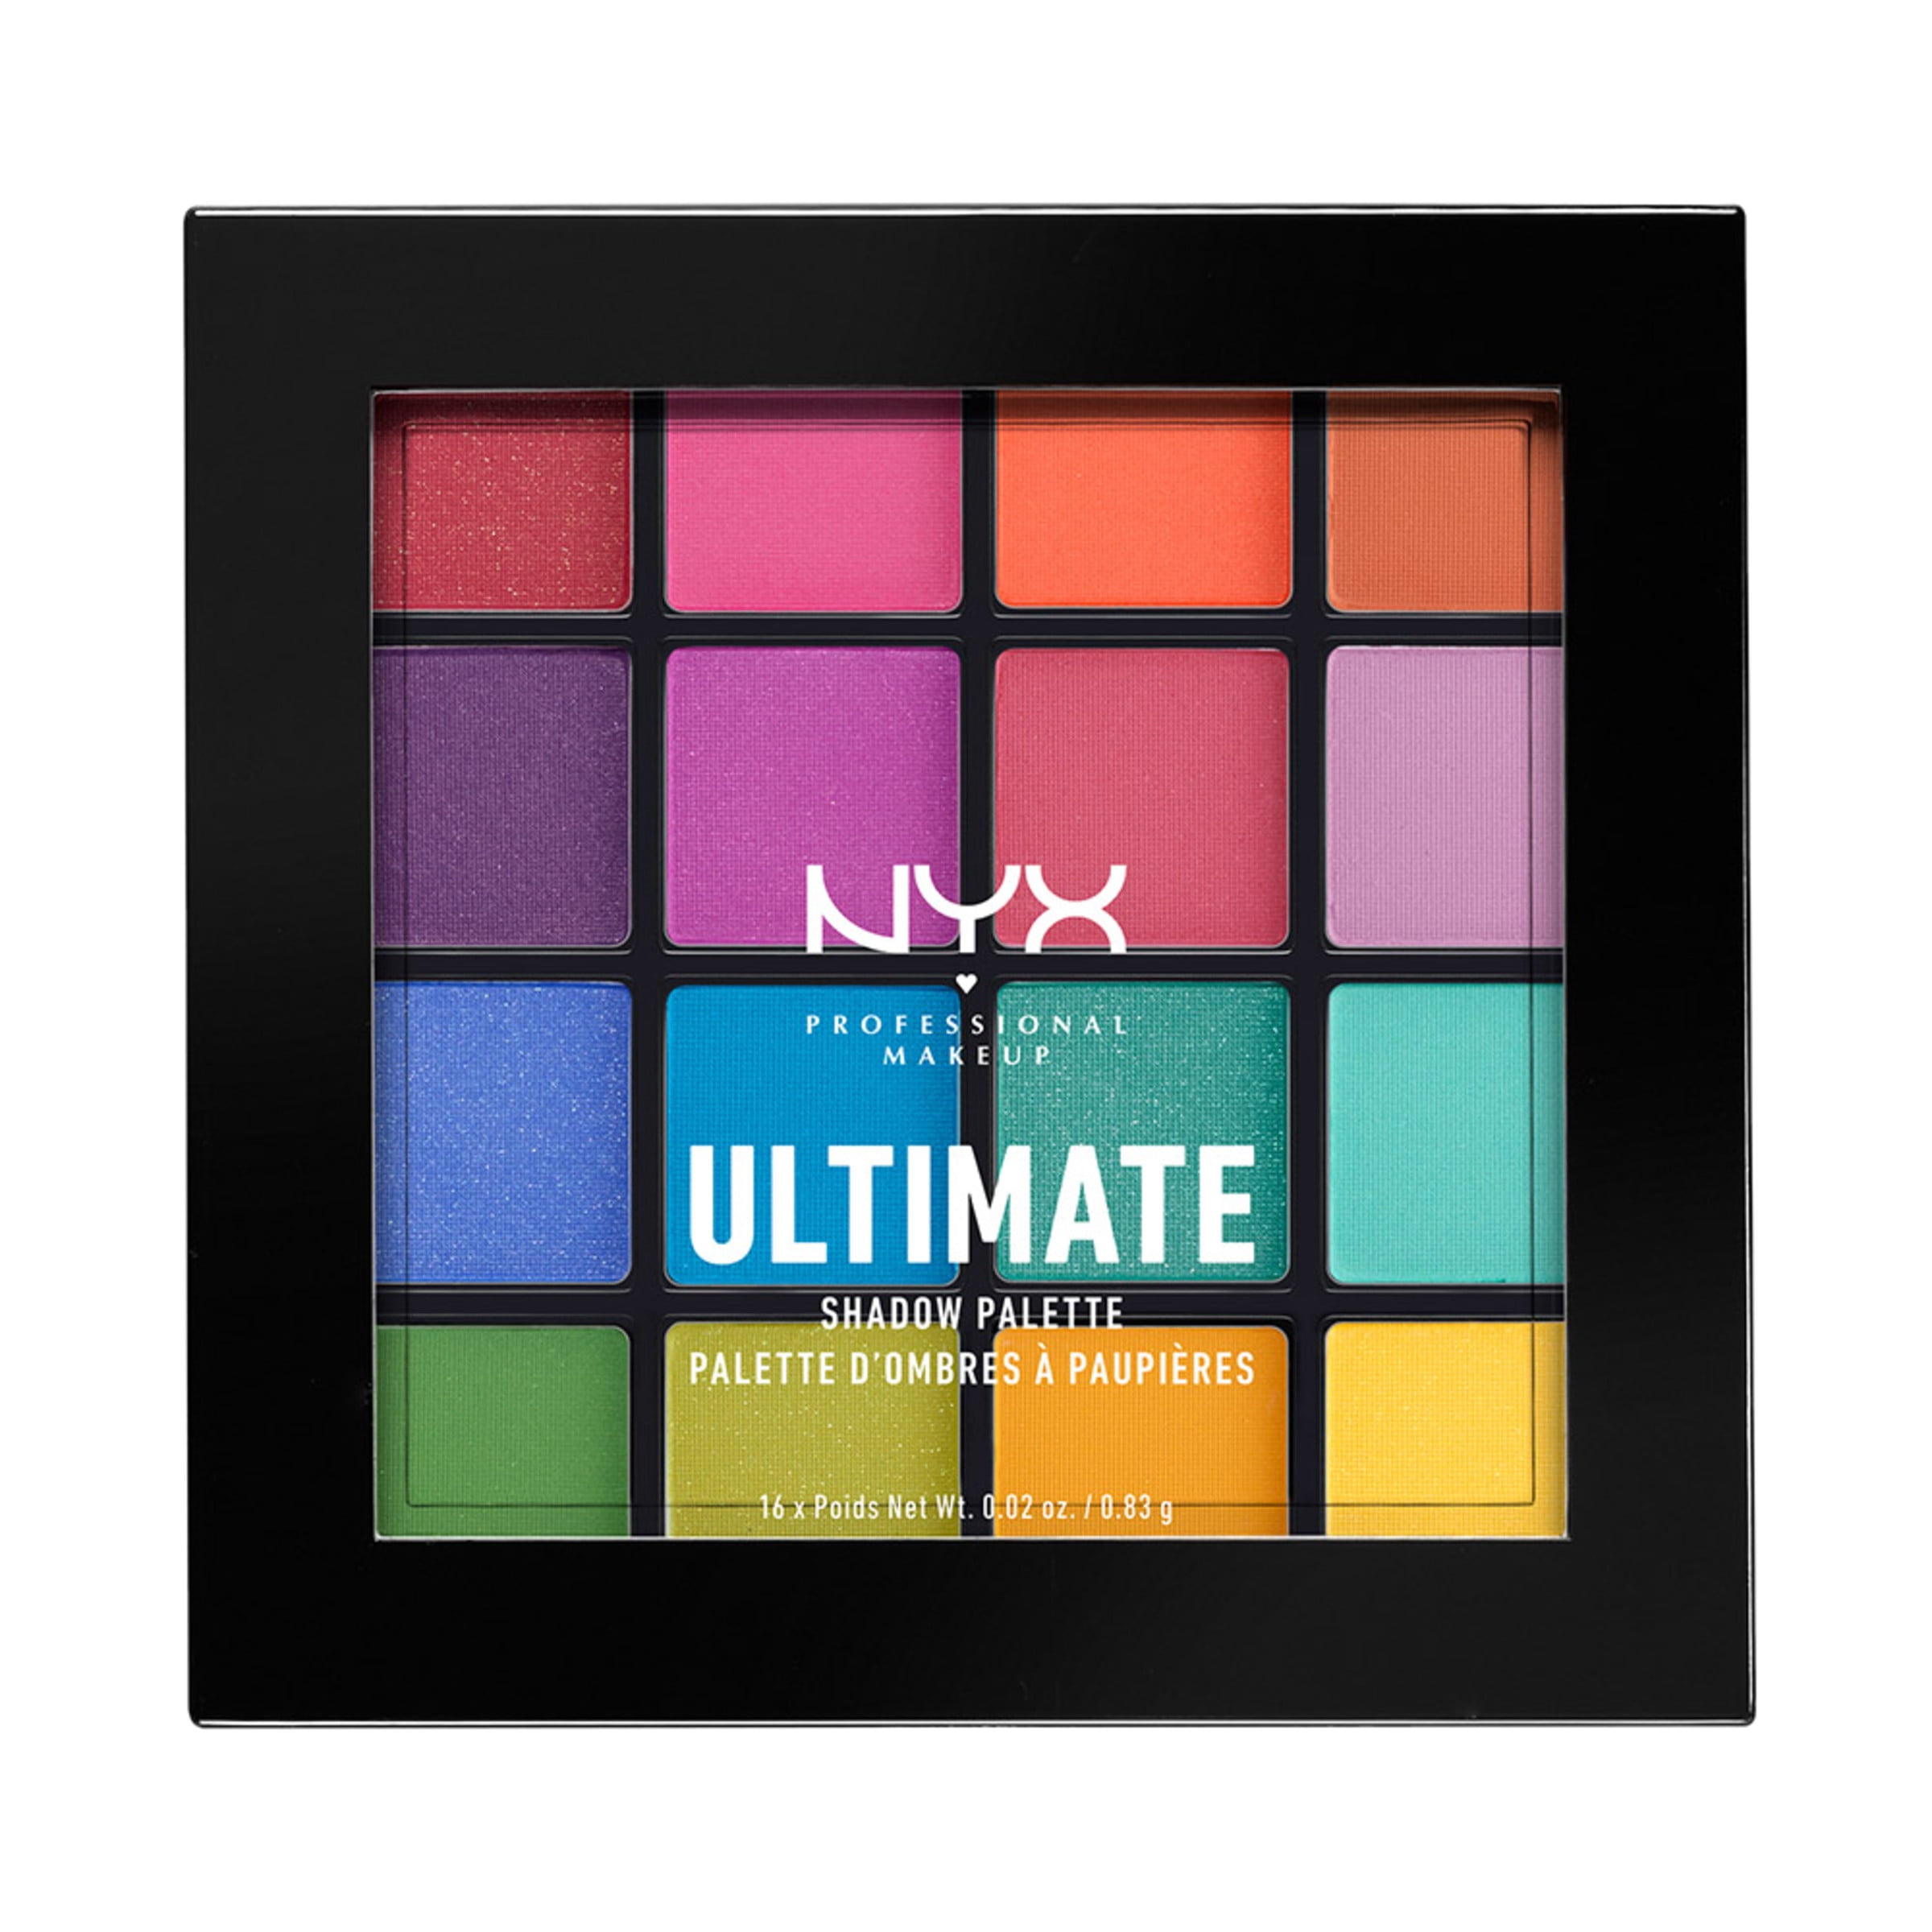 Forkludret Drikke sig fuld Hvile NYX Professional Makeup Ultimate Eye Shadow Palette, Warm Neutrals, 0.32 oz  - Walmart.com